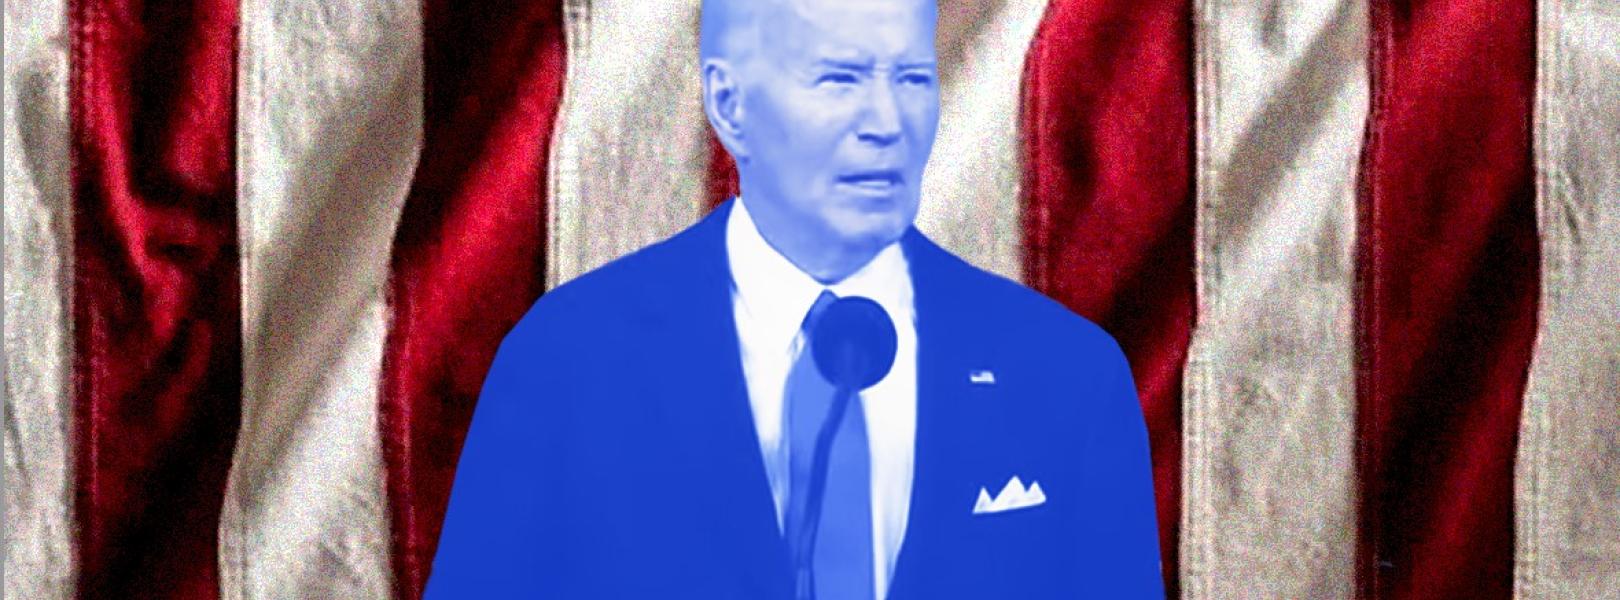 Biden’s ontkenning in de opiniepeilingen: waarom hij niet gelooft dat hij achterloopt